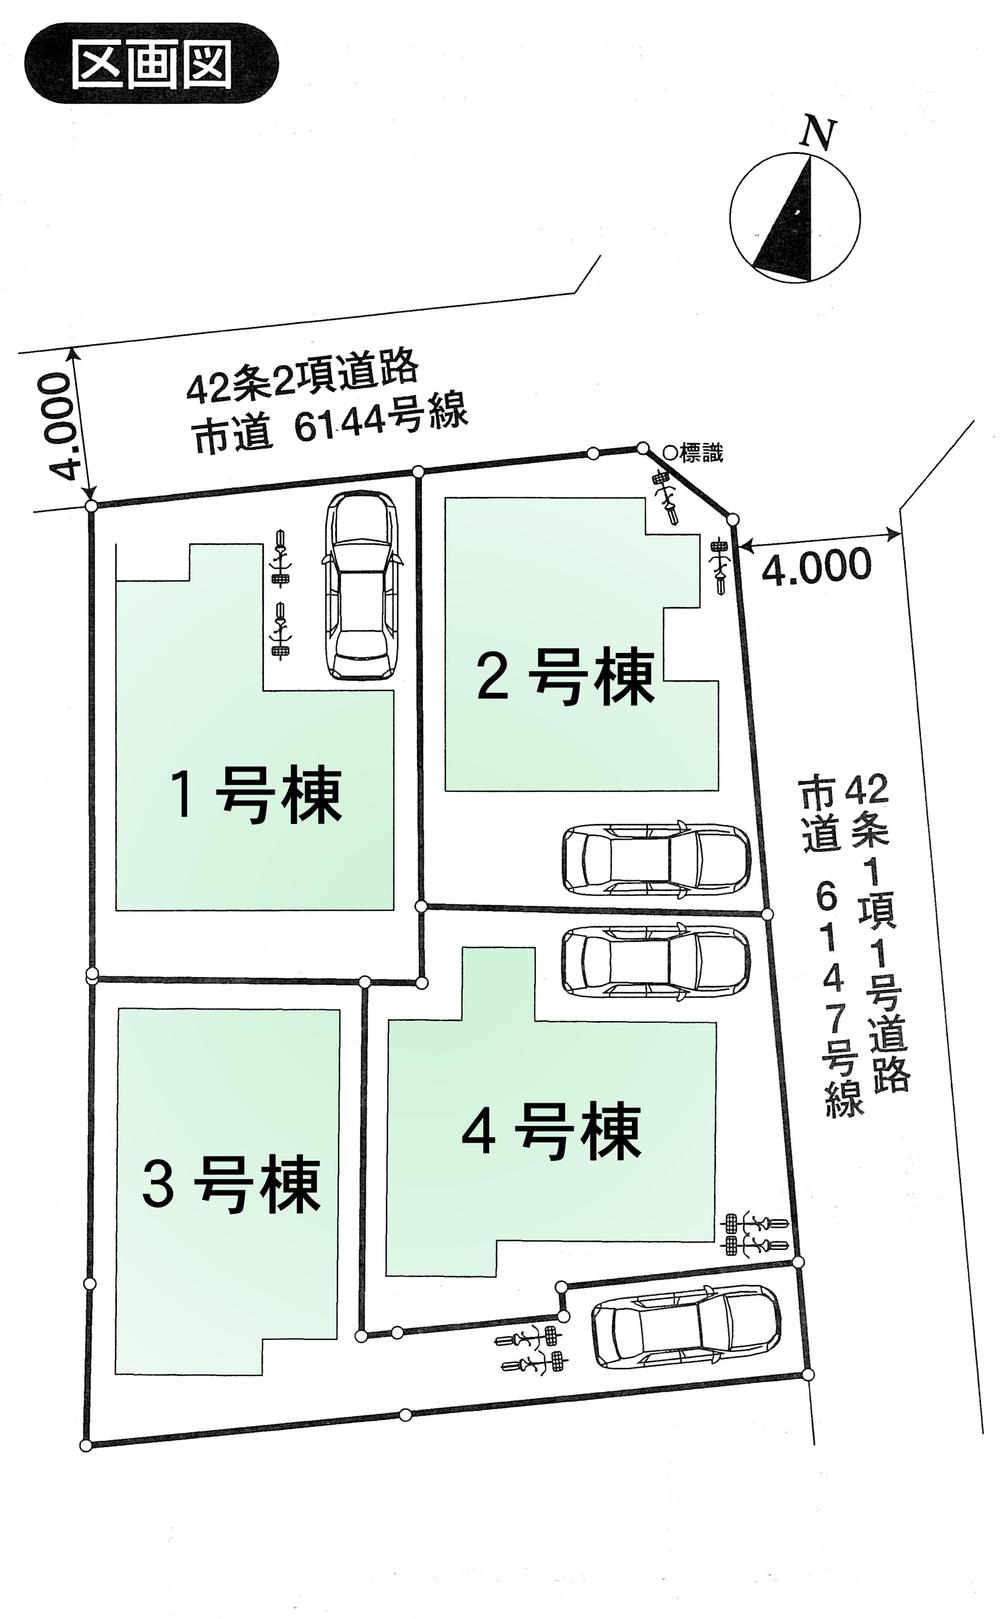 Compartment figure. 27.6 million yen, 4LDK, Land area 98.77 sq m , Building area 96.25 sq m all four buildings